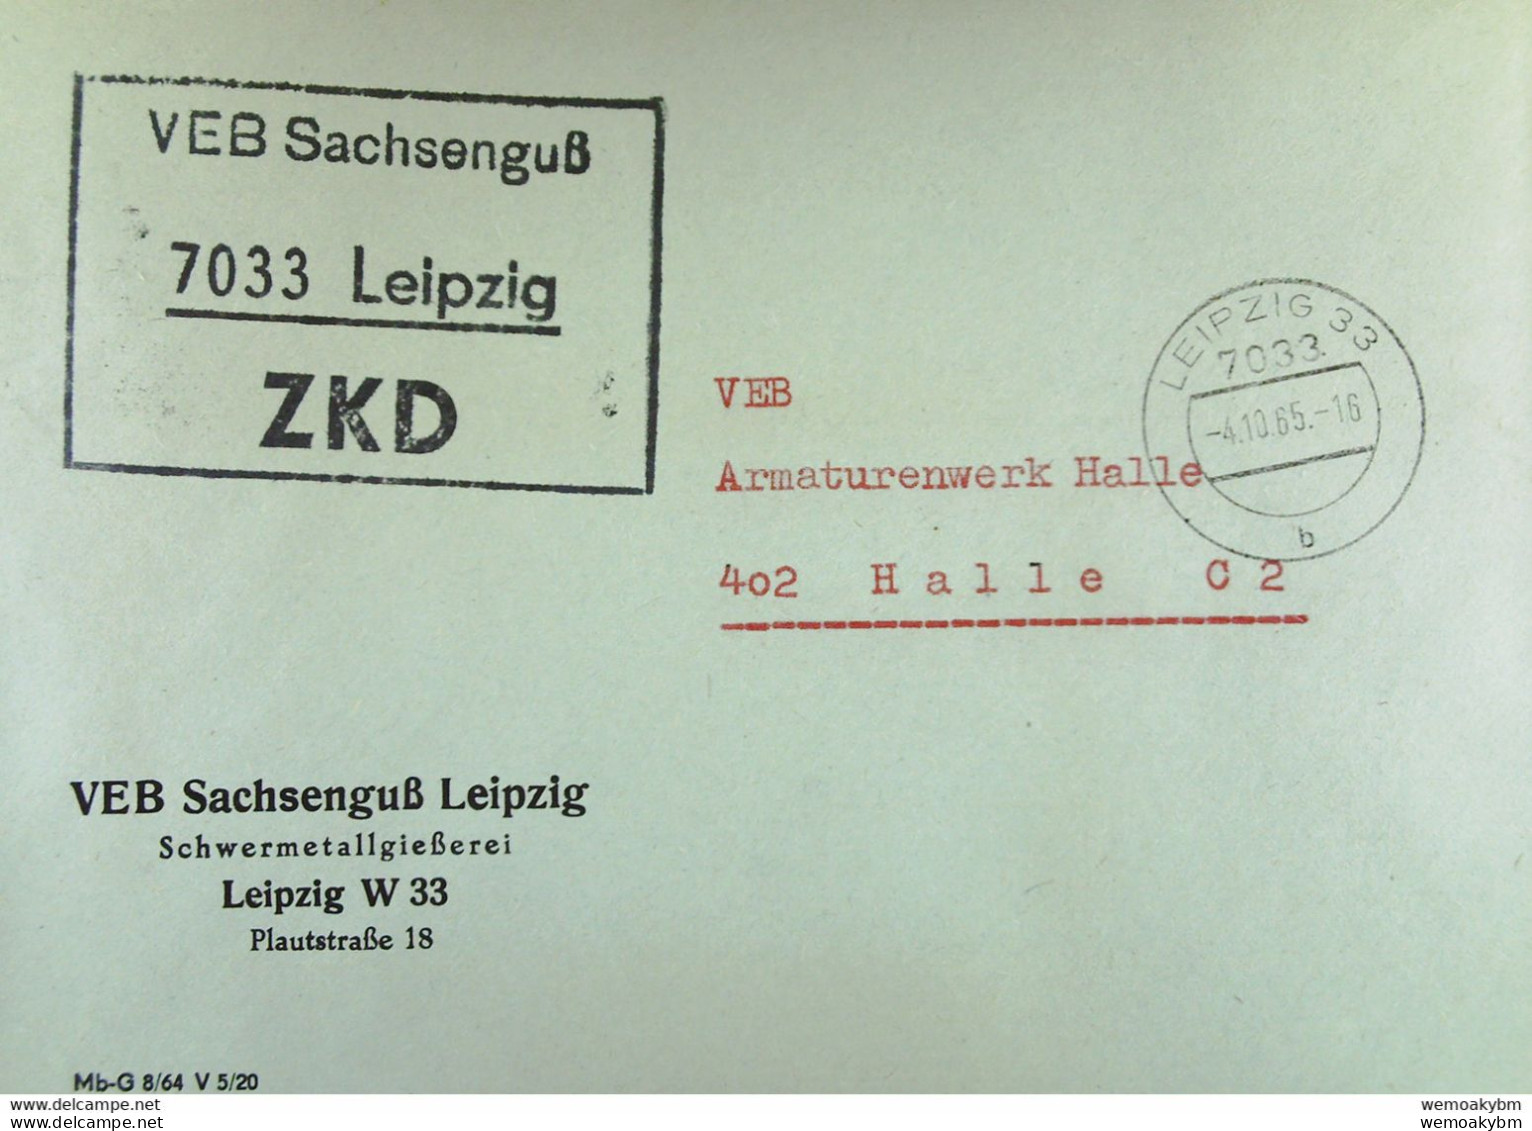 Brief Mit ZKD-Kastenstempel "VEB Sachsenguß 7033 Leipzig" Vom 4.10.65 An VEB Amaturenwerk Halle - Zentraler Kurierdienst